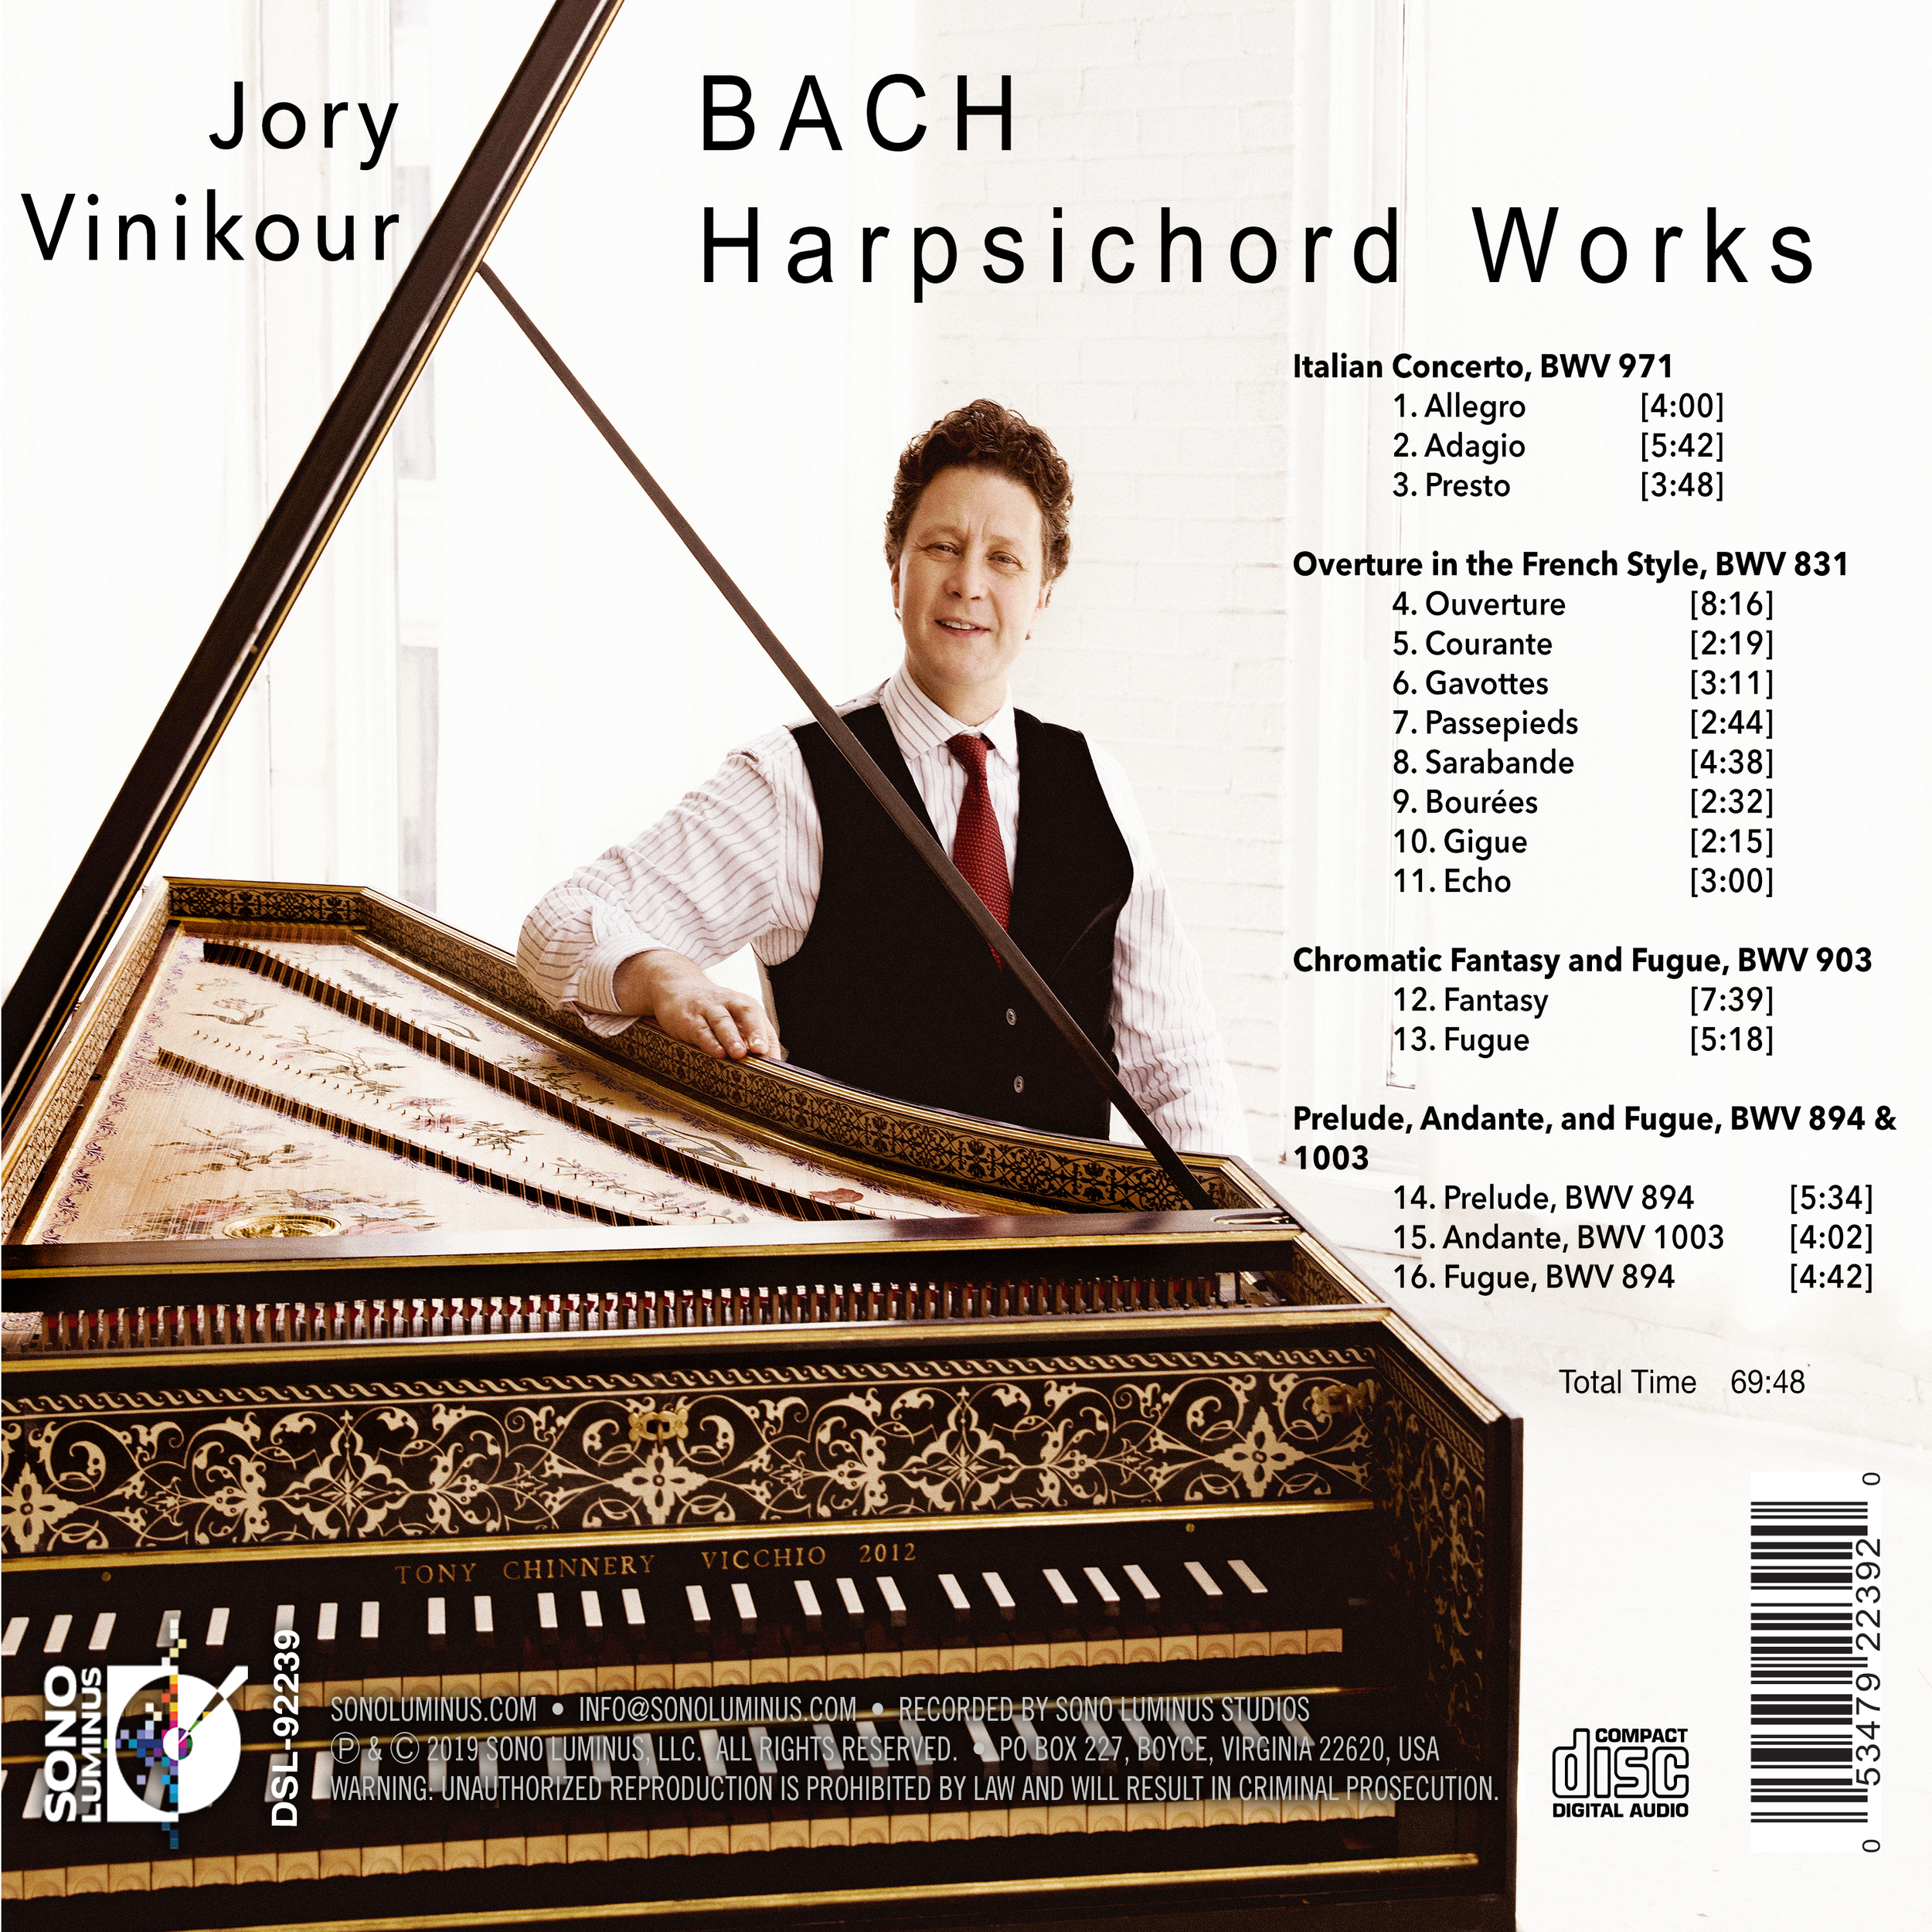 Works　Bach　Harpsichord　Label　—　Recording　Sono　Luminus　Studio　Record